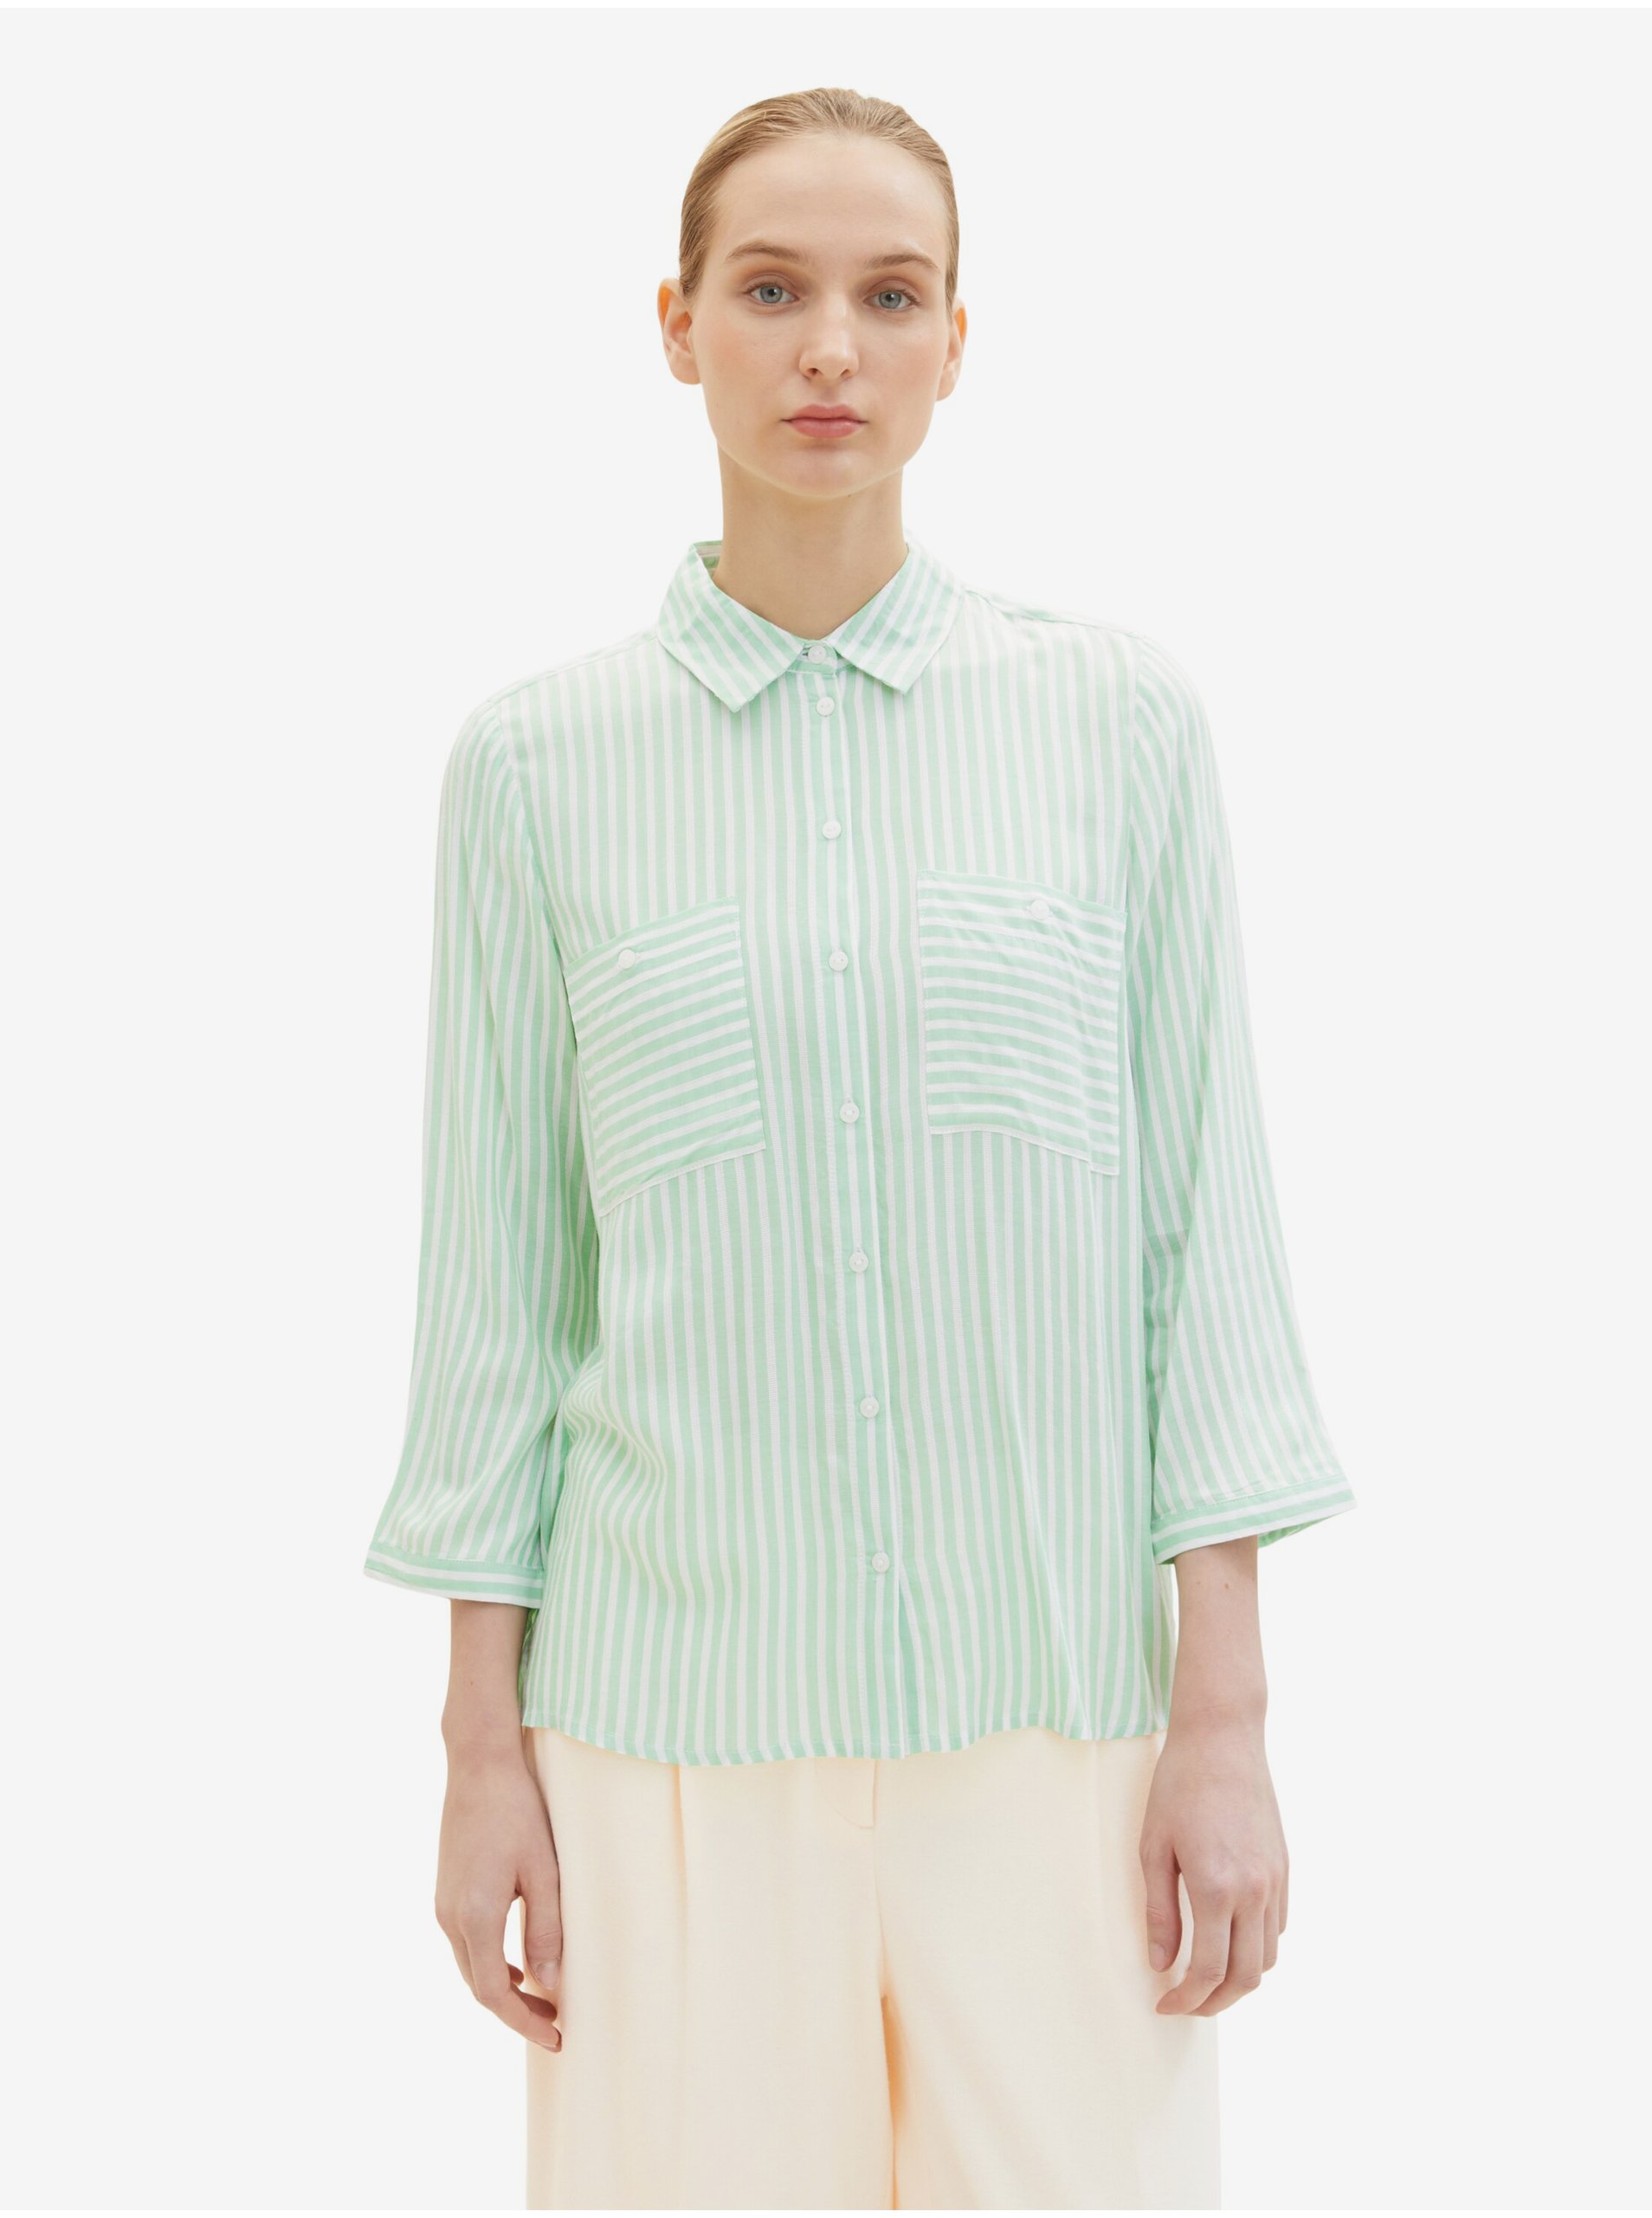 Lacno Bielo-zelená dámska pruhovaná košeľa Tom Tailor